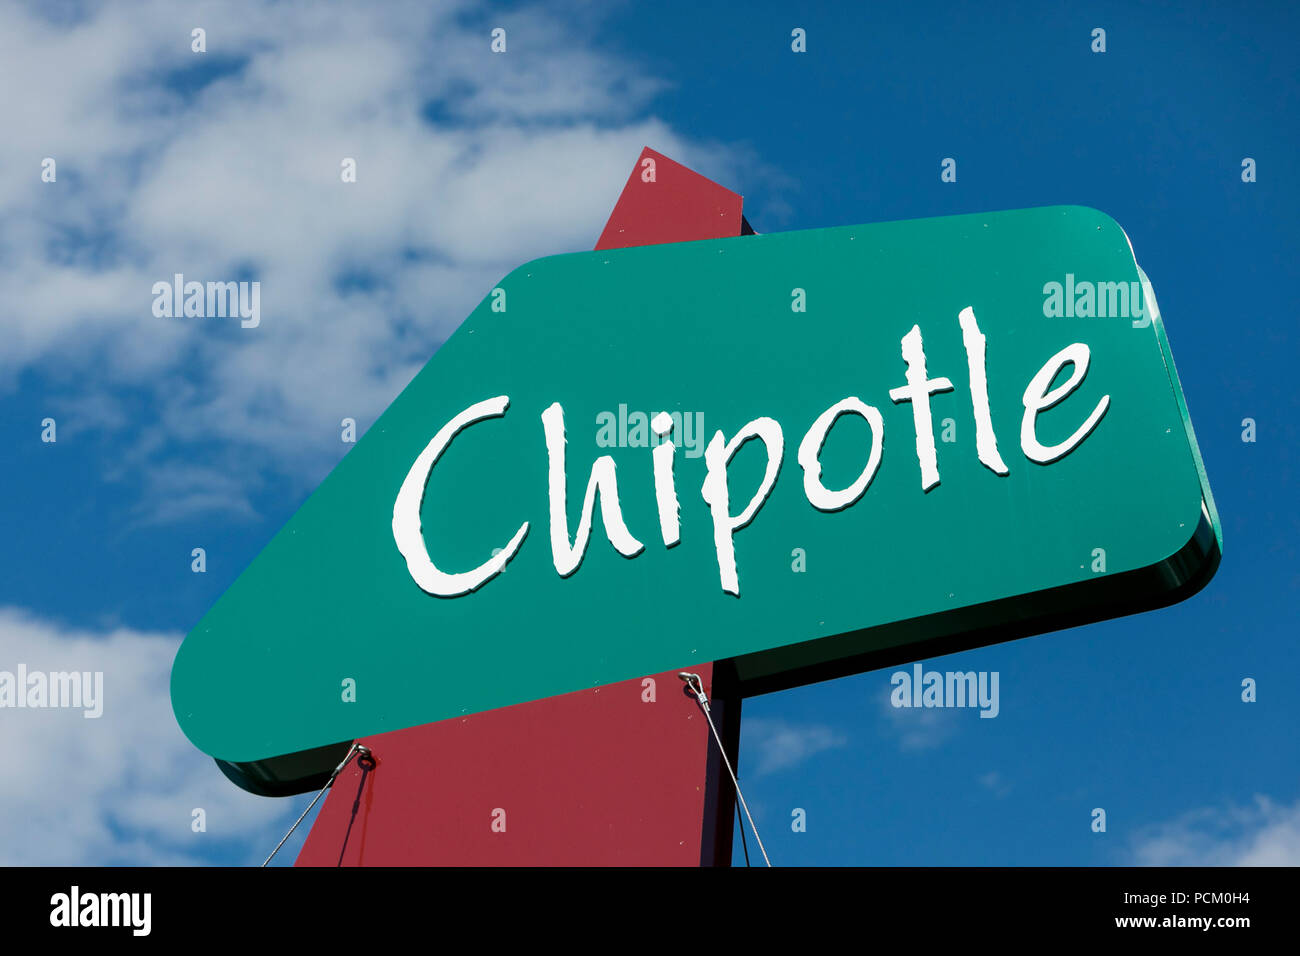 Un logotipo cartel fuera del primer Chipotle restaurante informal rápida ubicación en Denver, Colorado, el 22 de julio de 2018. Foto de stock